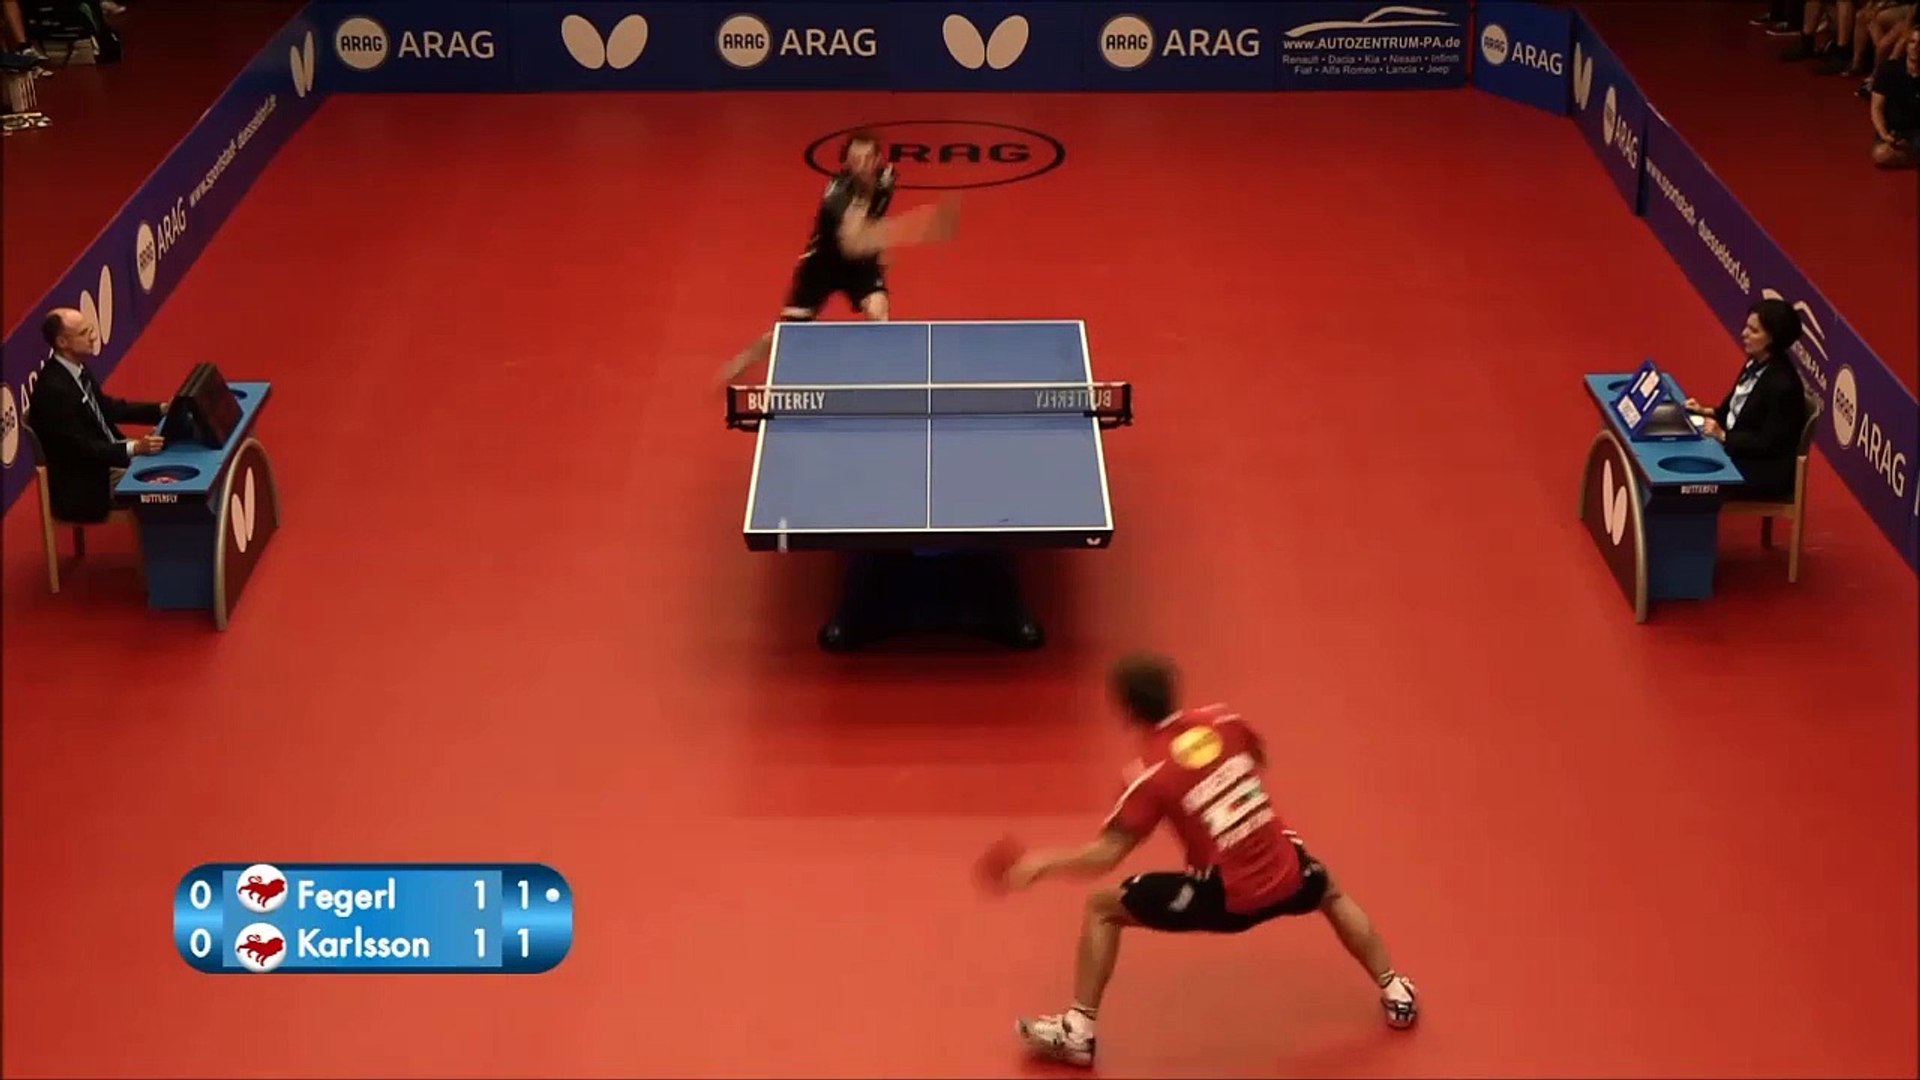 Le point de Ping pong le plus fou! Surréaliste - Vidéo Dailymotion